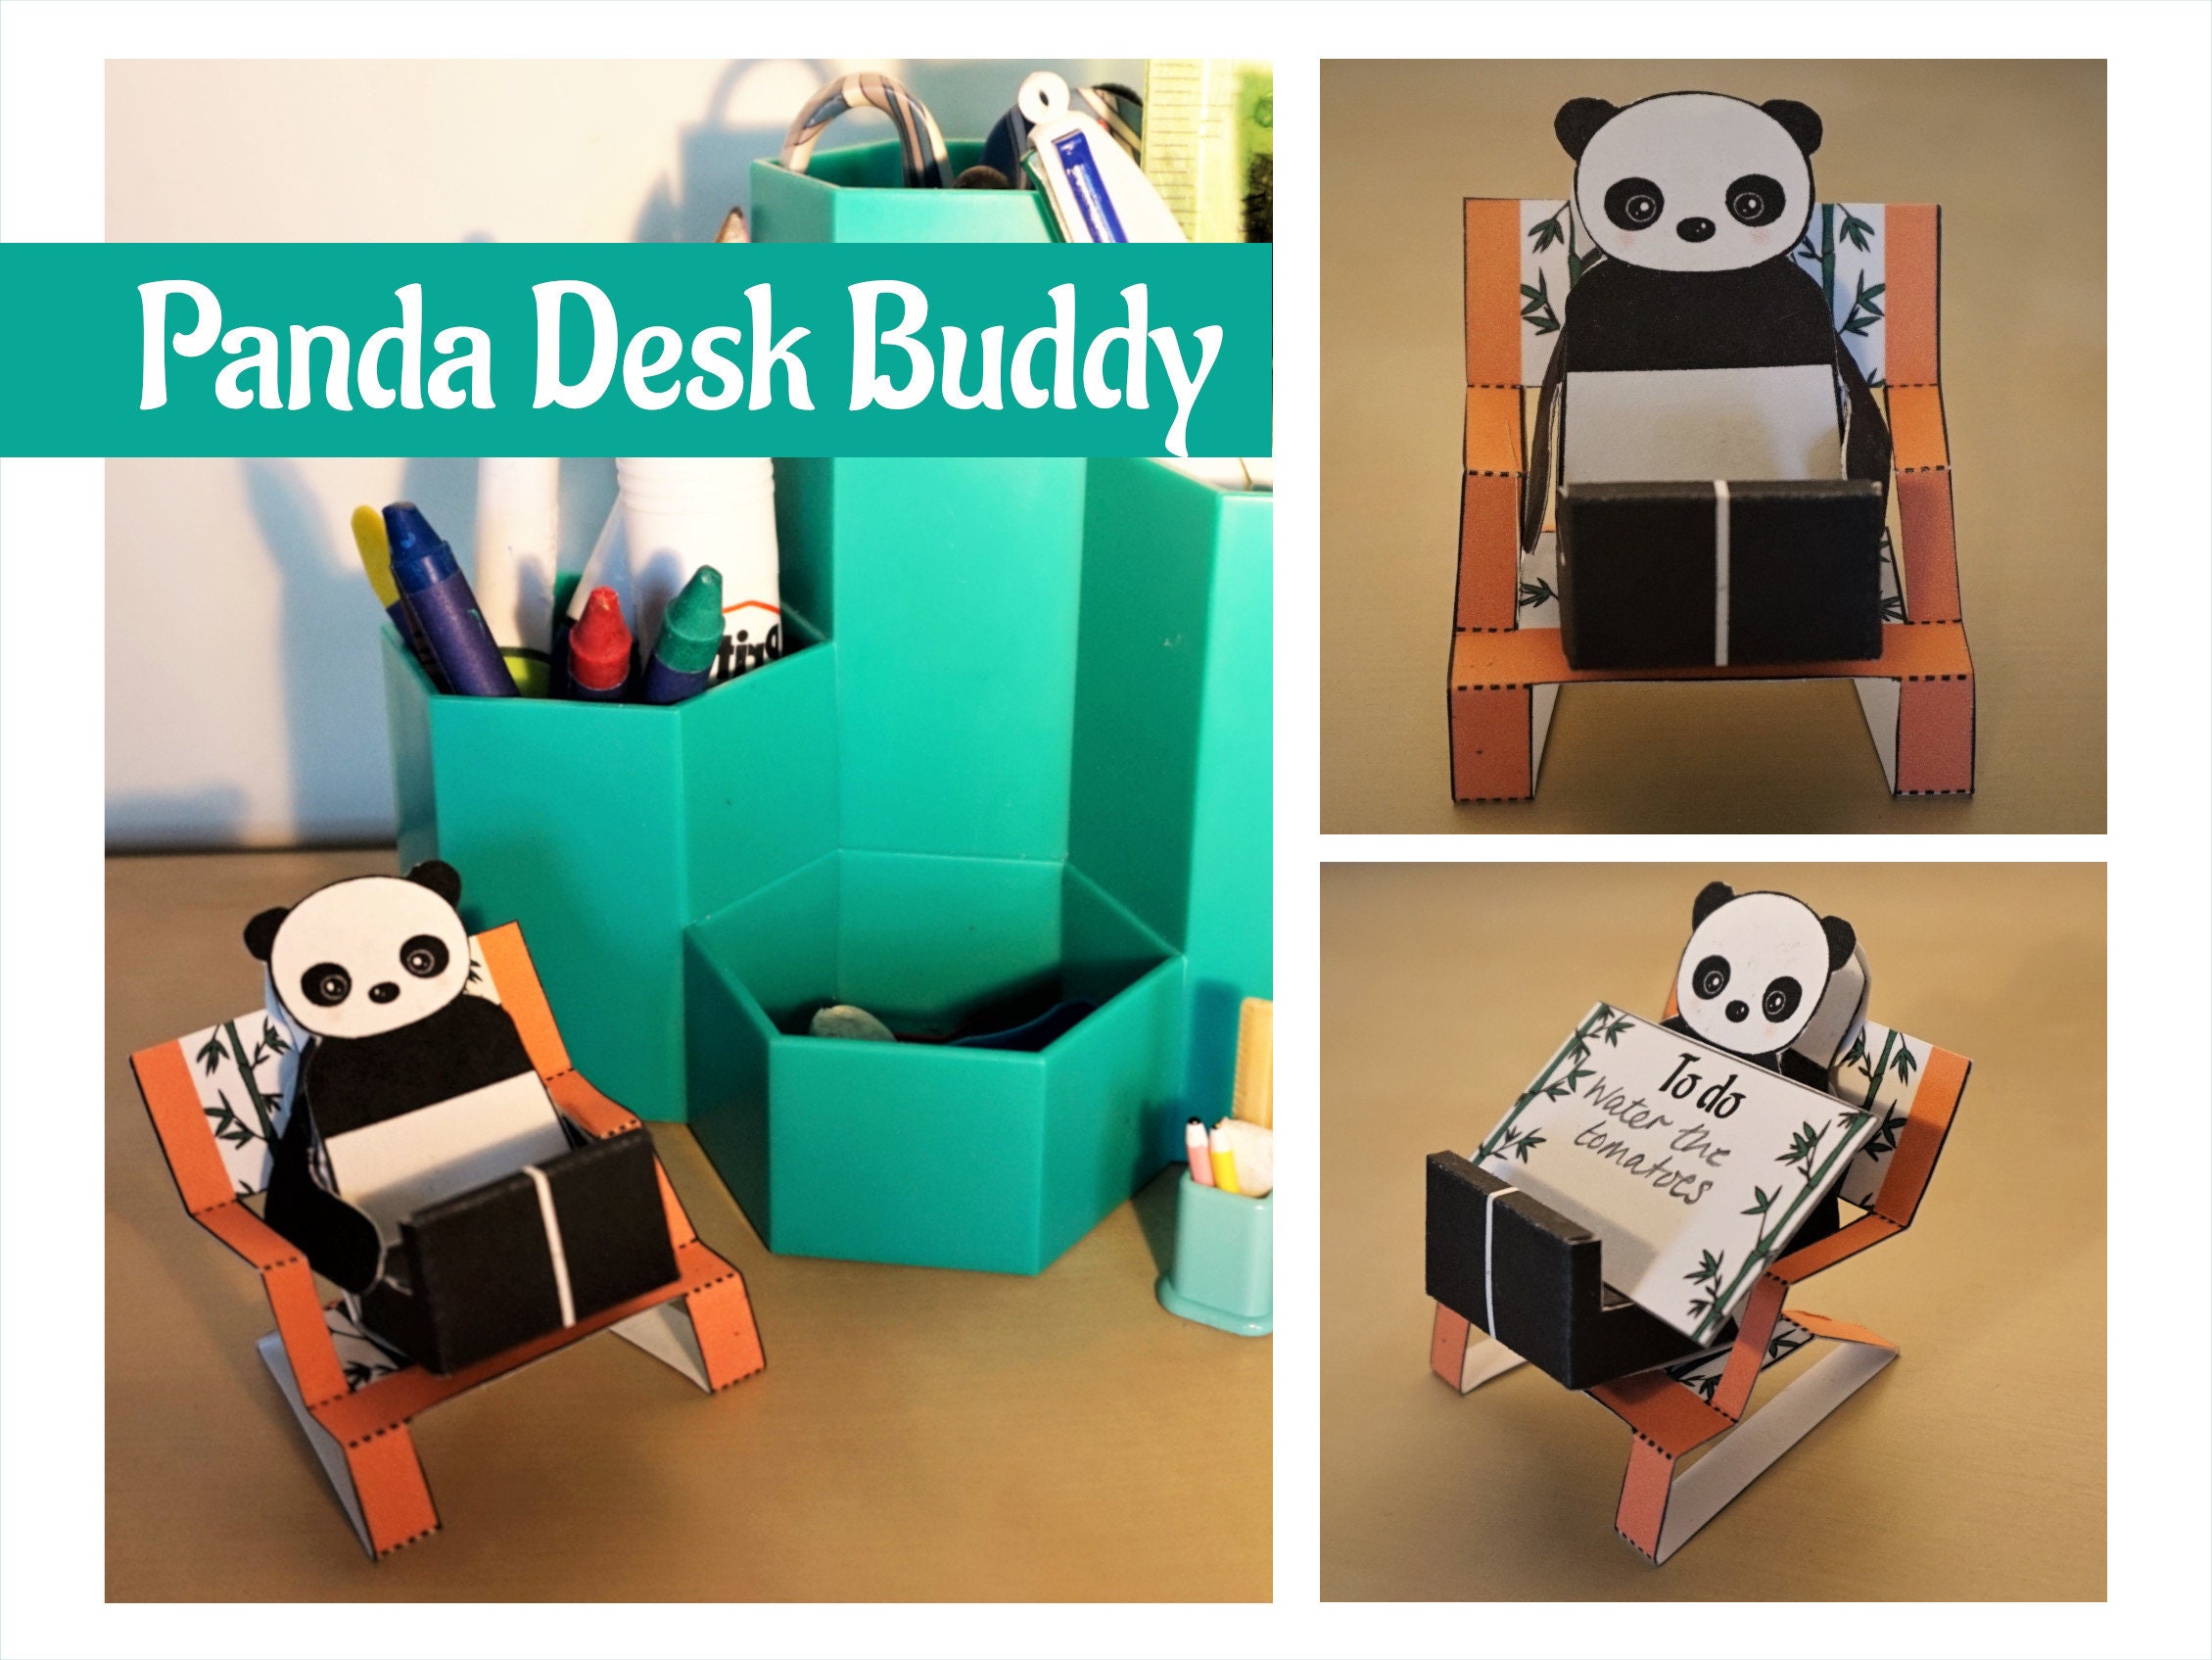 Panda desk buddy